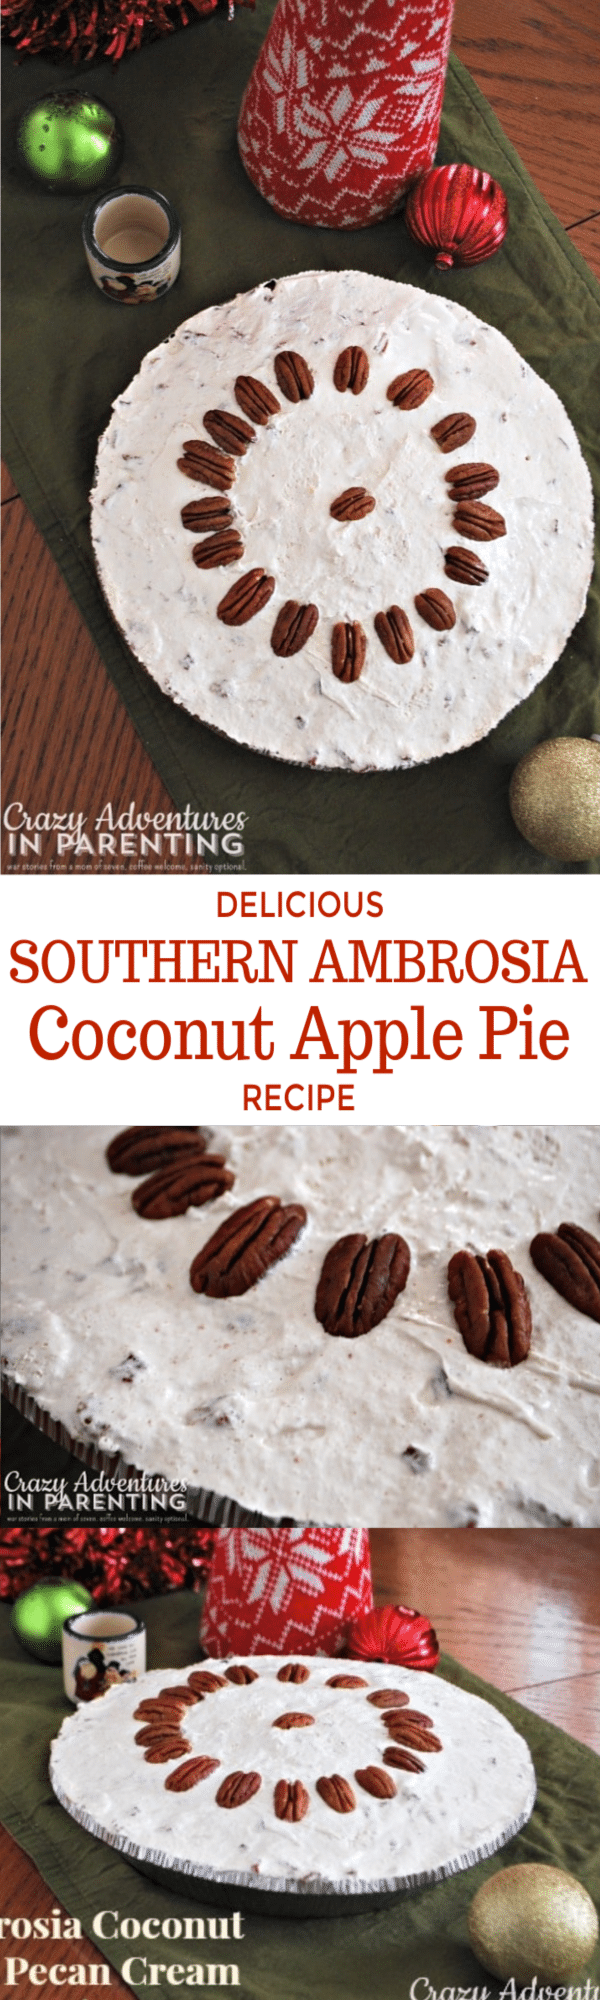 Delicious Southern Ambrosia Coconut Apple Pie Recipe